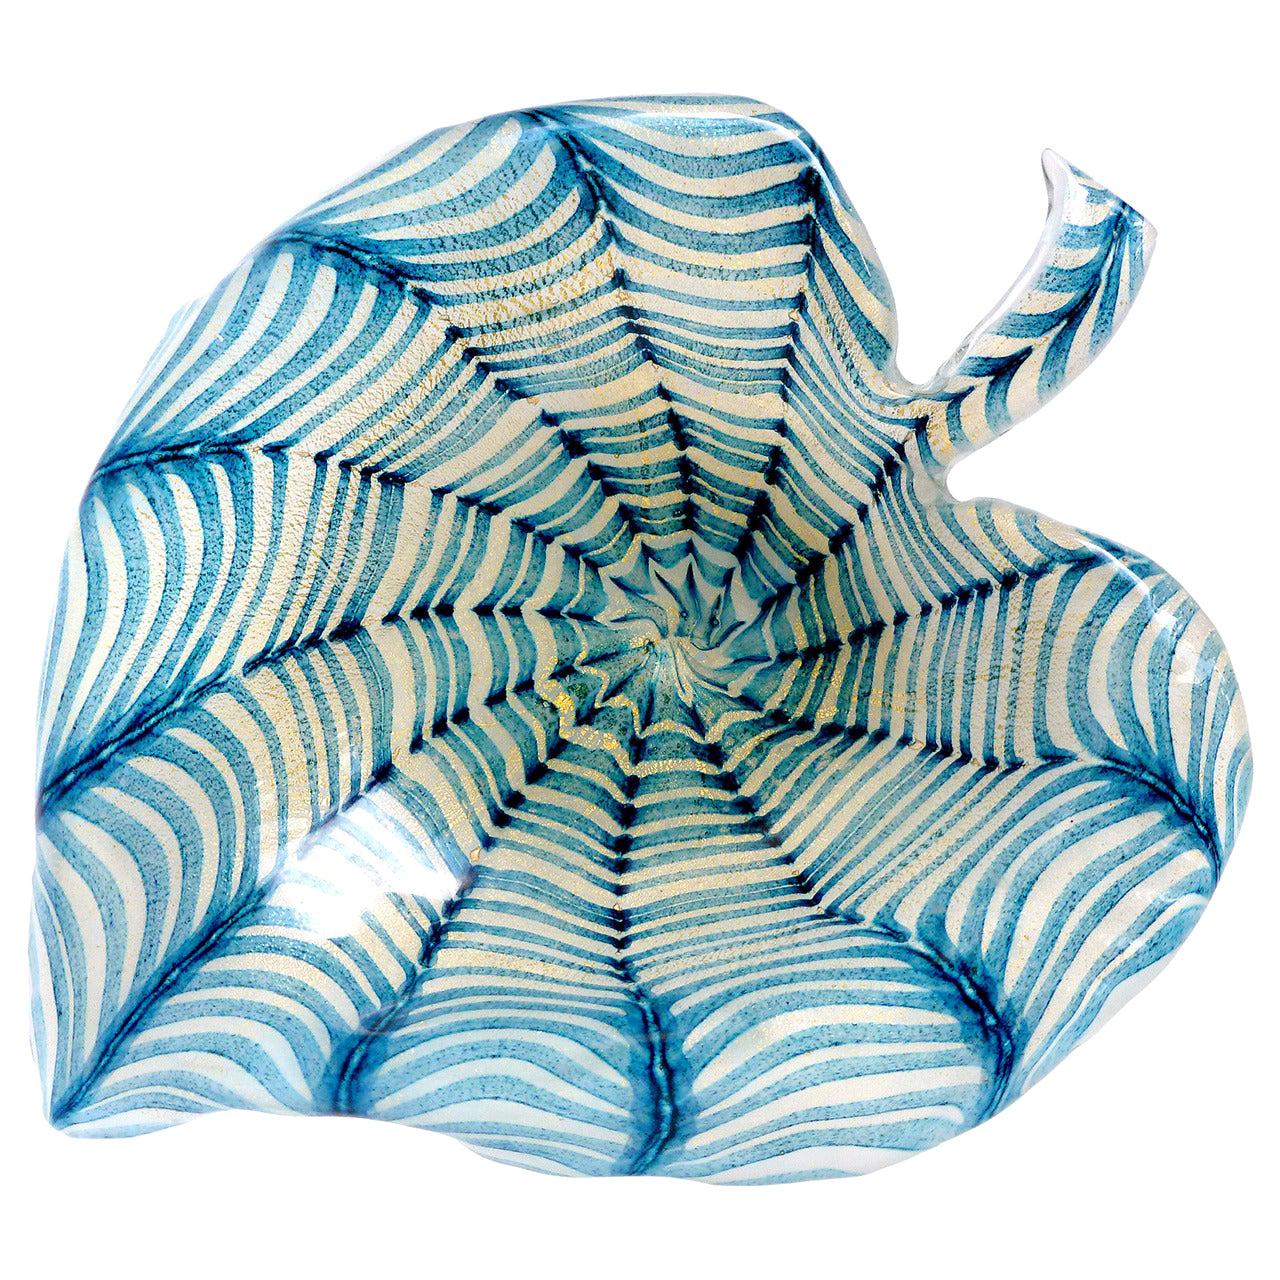 Ercole Barovier Toso Murano Gold Flecks Blue Spiderweb Italian Art Glass Bowl